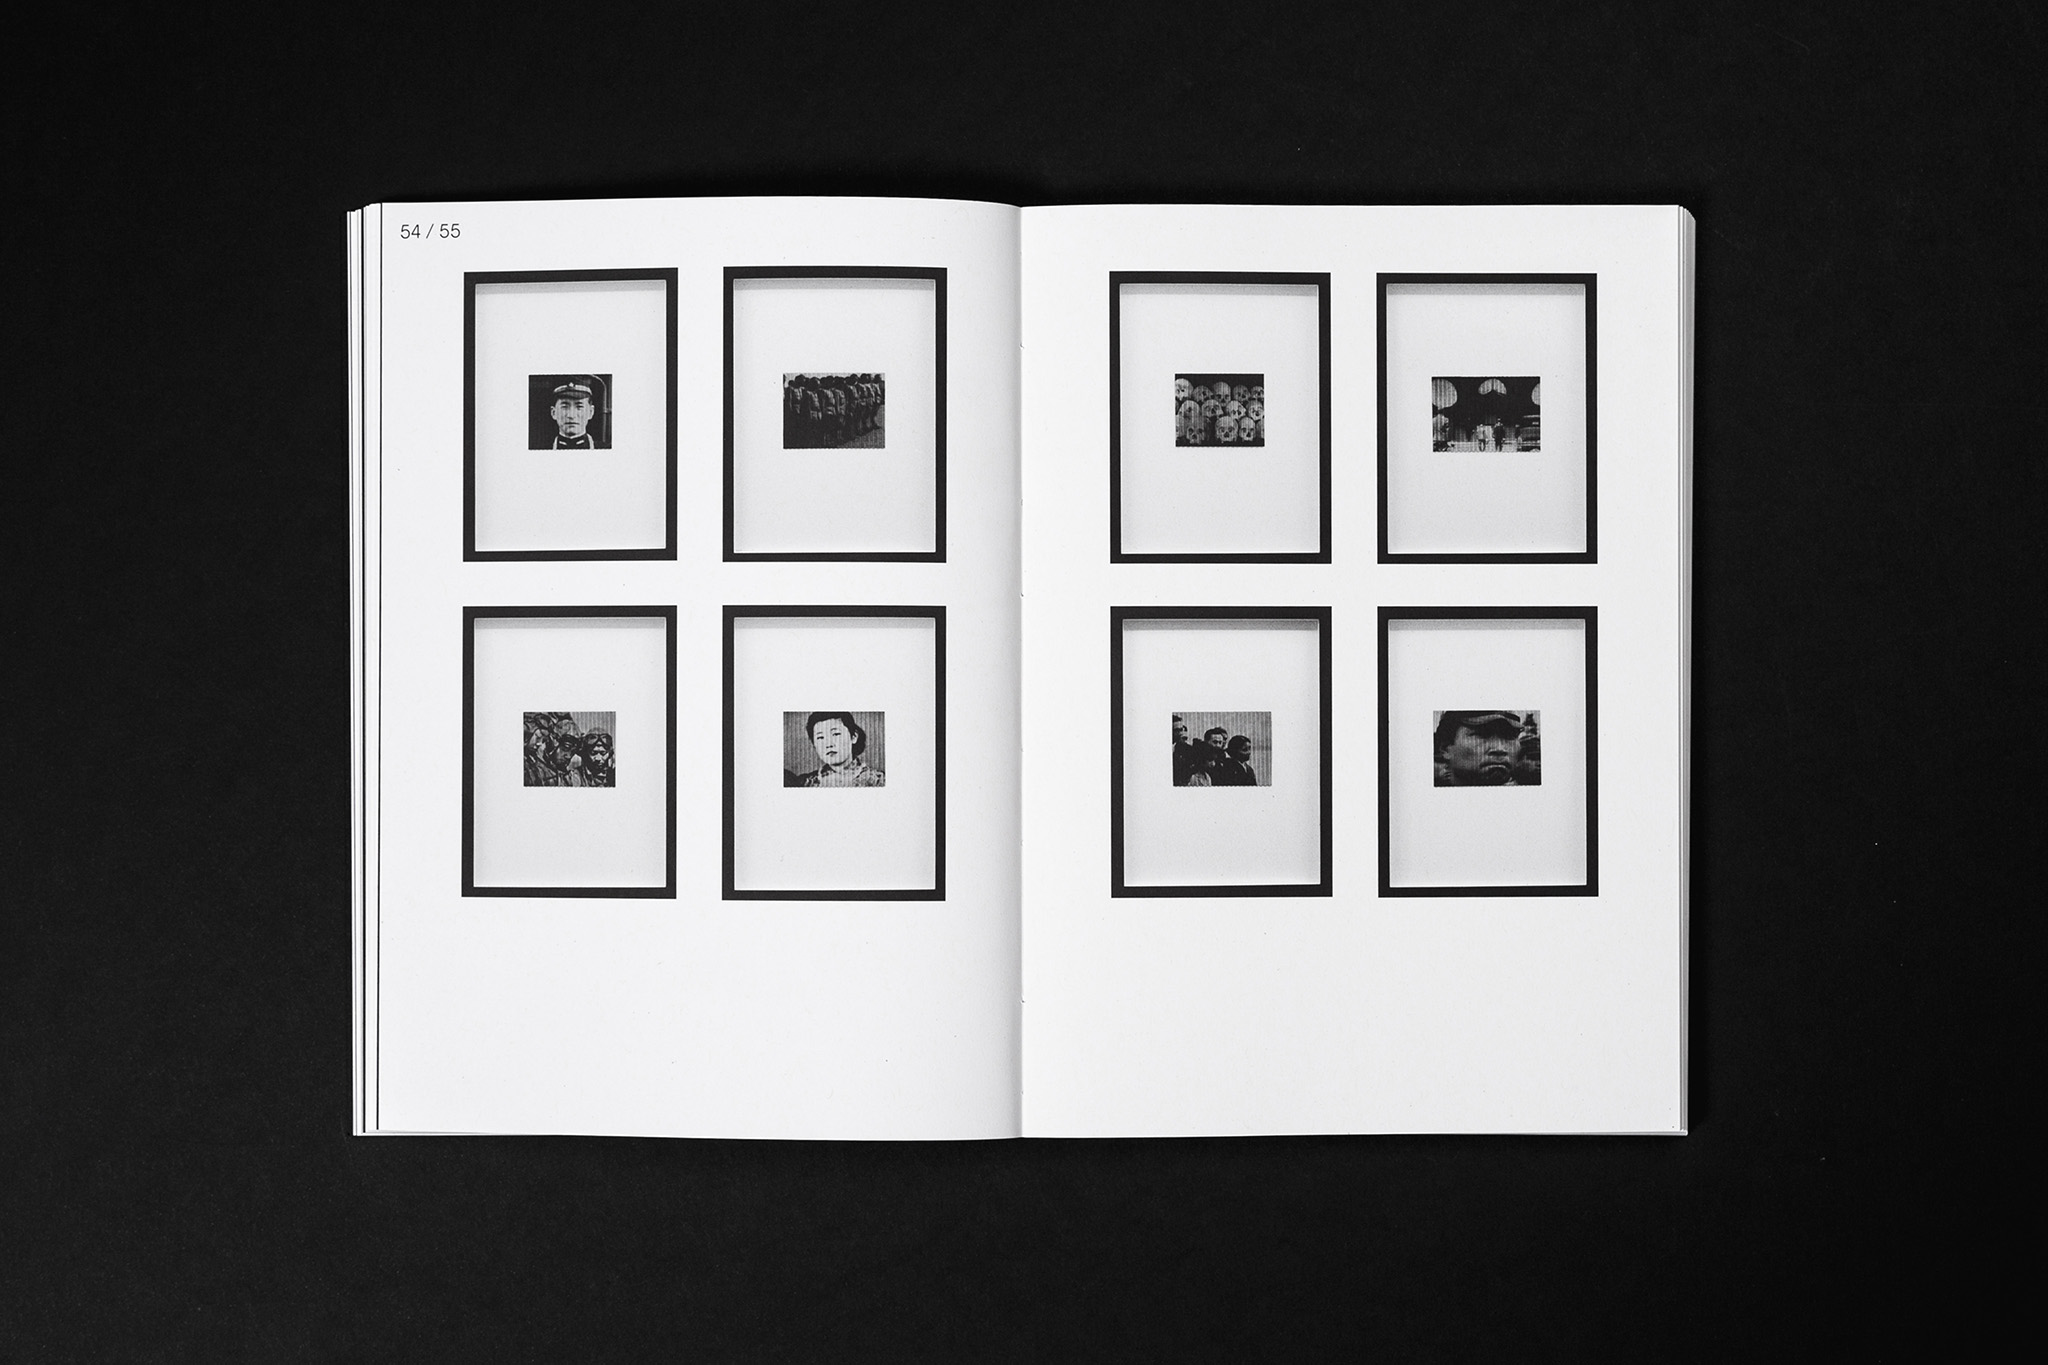 Doppelseite mit 8 gerahmten Werken / Double page with 8 framed works